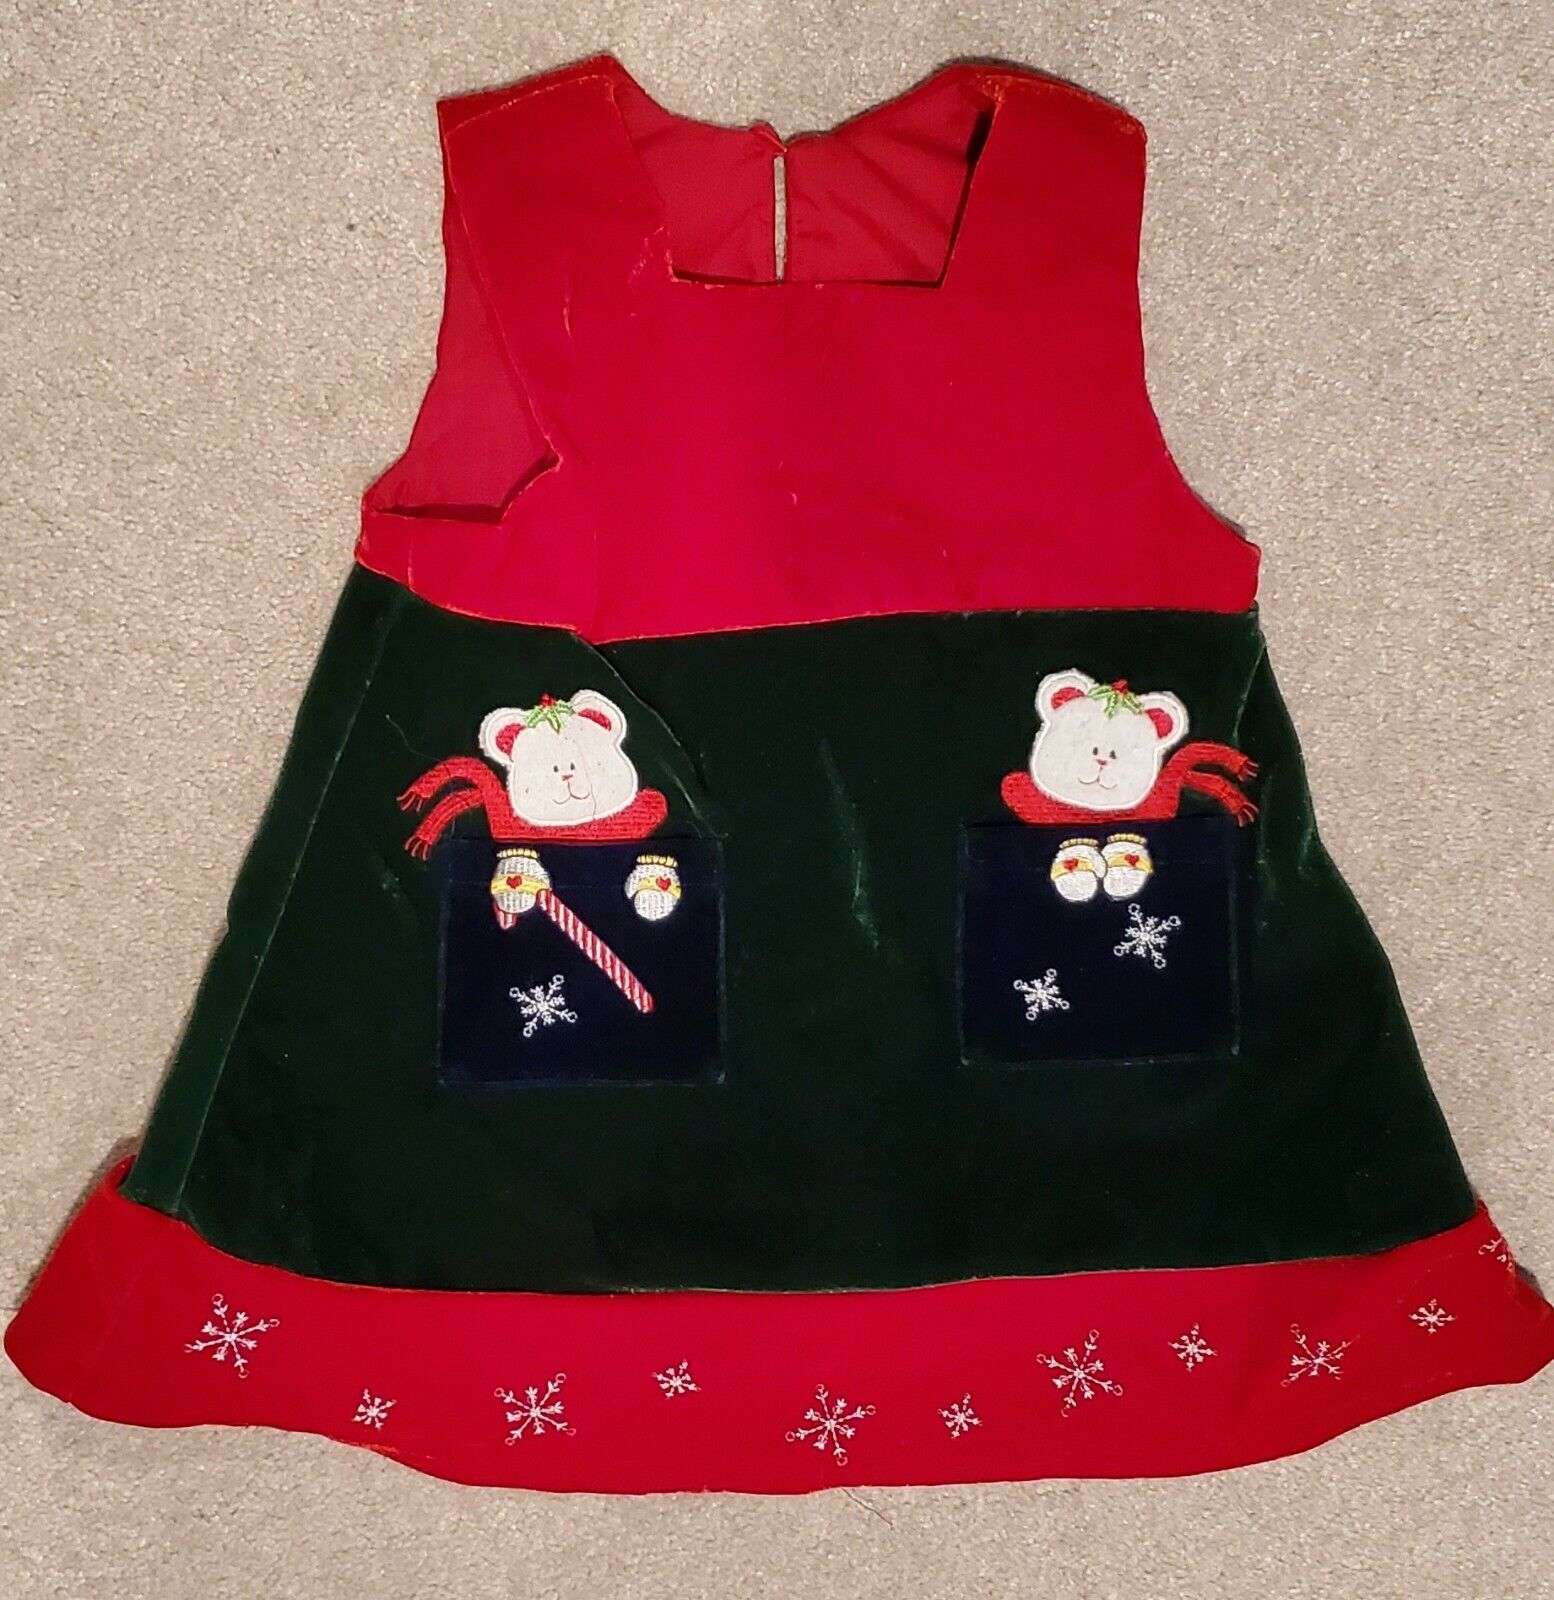 Size 18 Months Baby Girl Red Velvet Holiday Christmas Winter Jumper Dress RARE